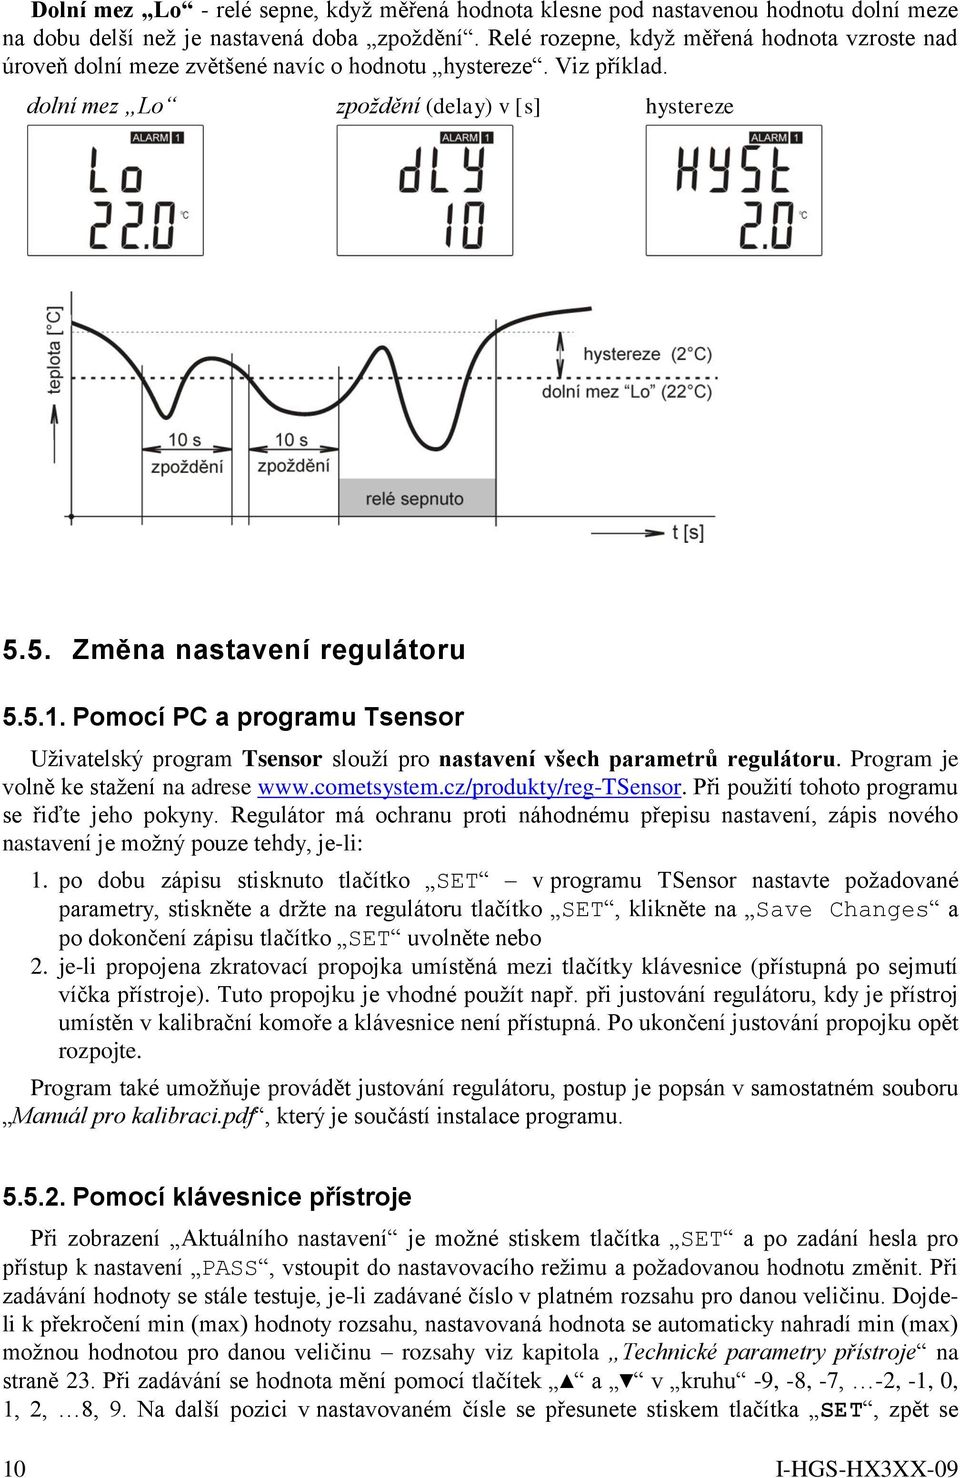 Pomocí PC a programu Tsensor Uživatelský program Tsensor slouží pro nastavení všech parametrů regulátoru. Program je volně ke stažení na adrese www.cometsystem.cz/produkty/reg-tsensor.